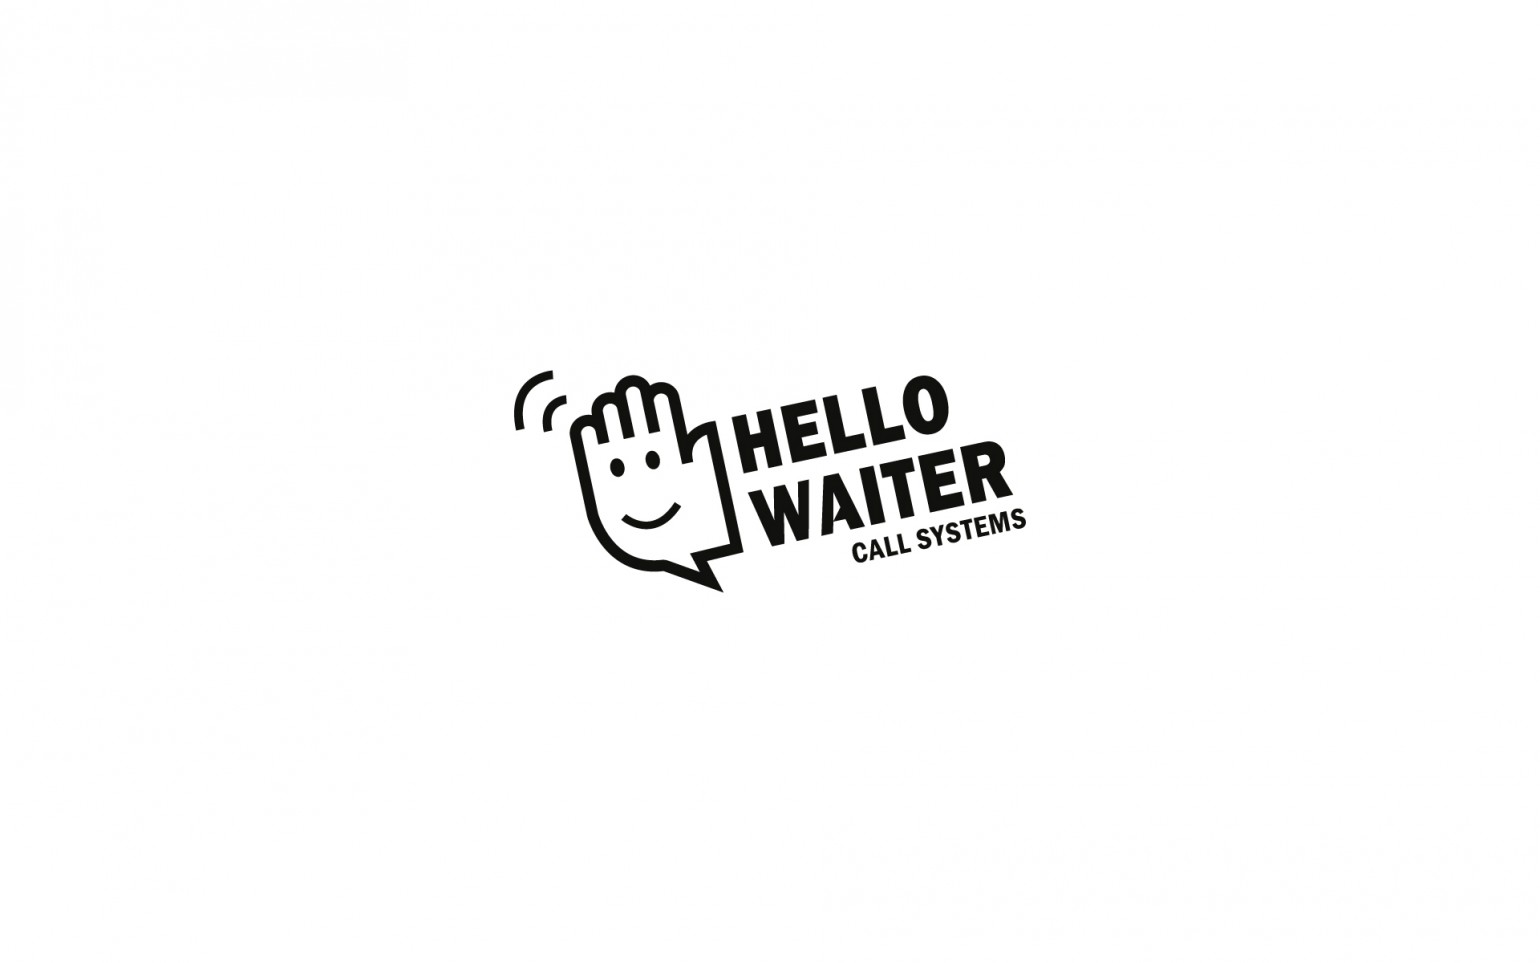 logo-hello-waiter-bg-white-1